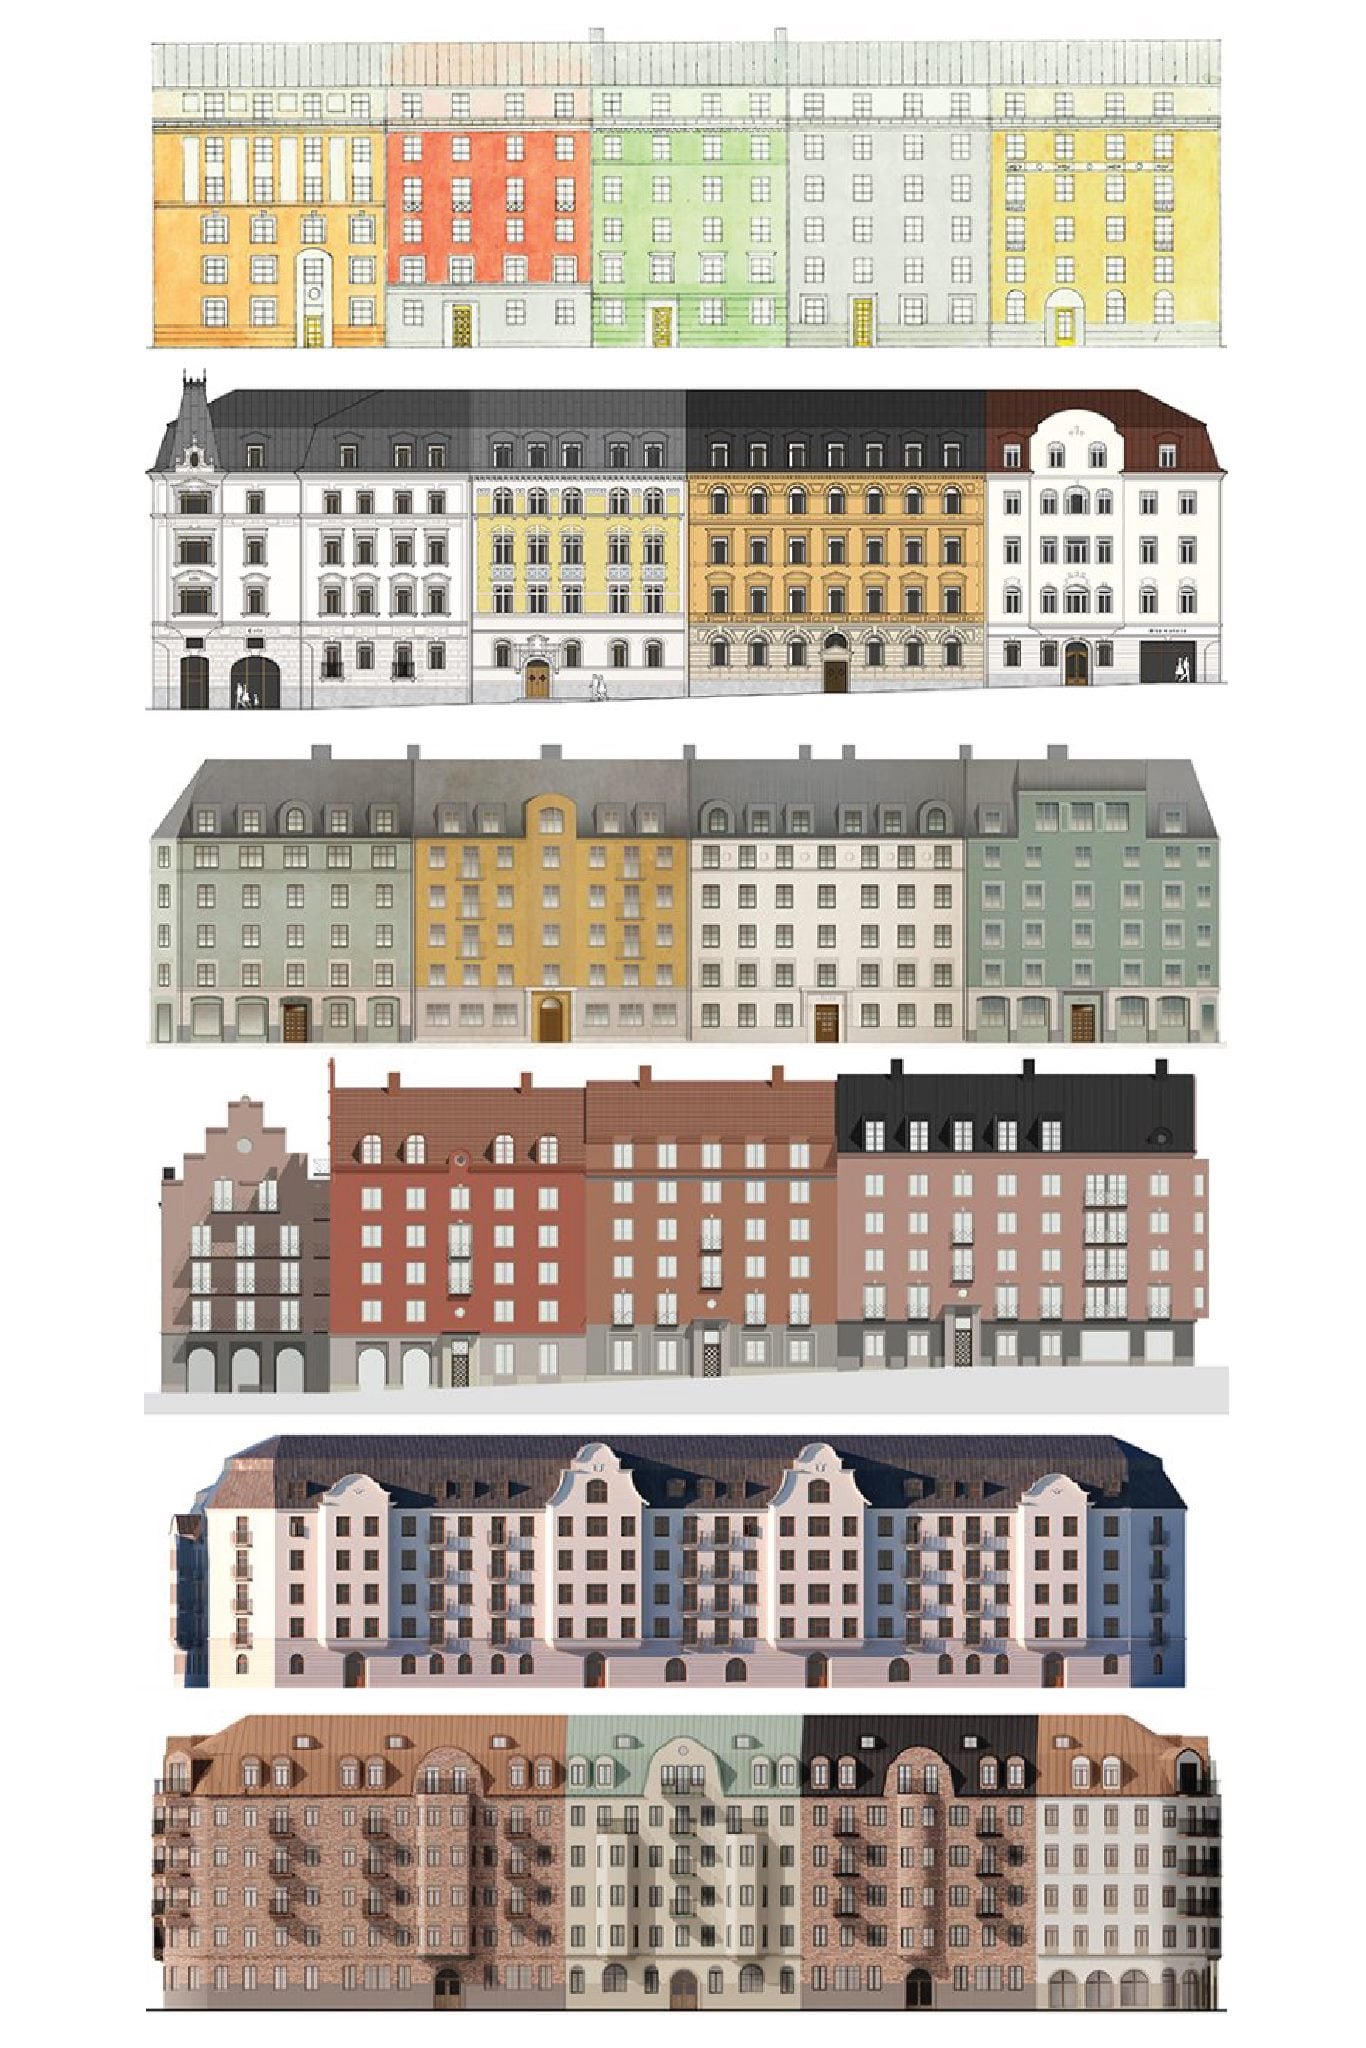 Klassisk arkitektur i Upplands Väsbys arkitekturtävling. Arkitekterna bakom förslagen offentliggörs i slutet av april 2020